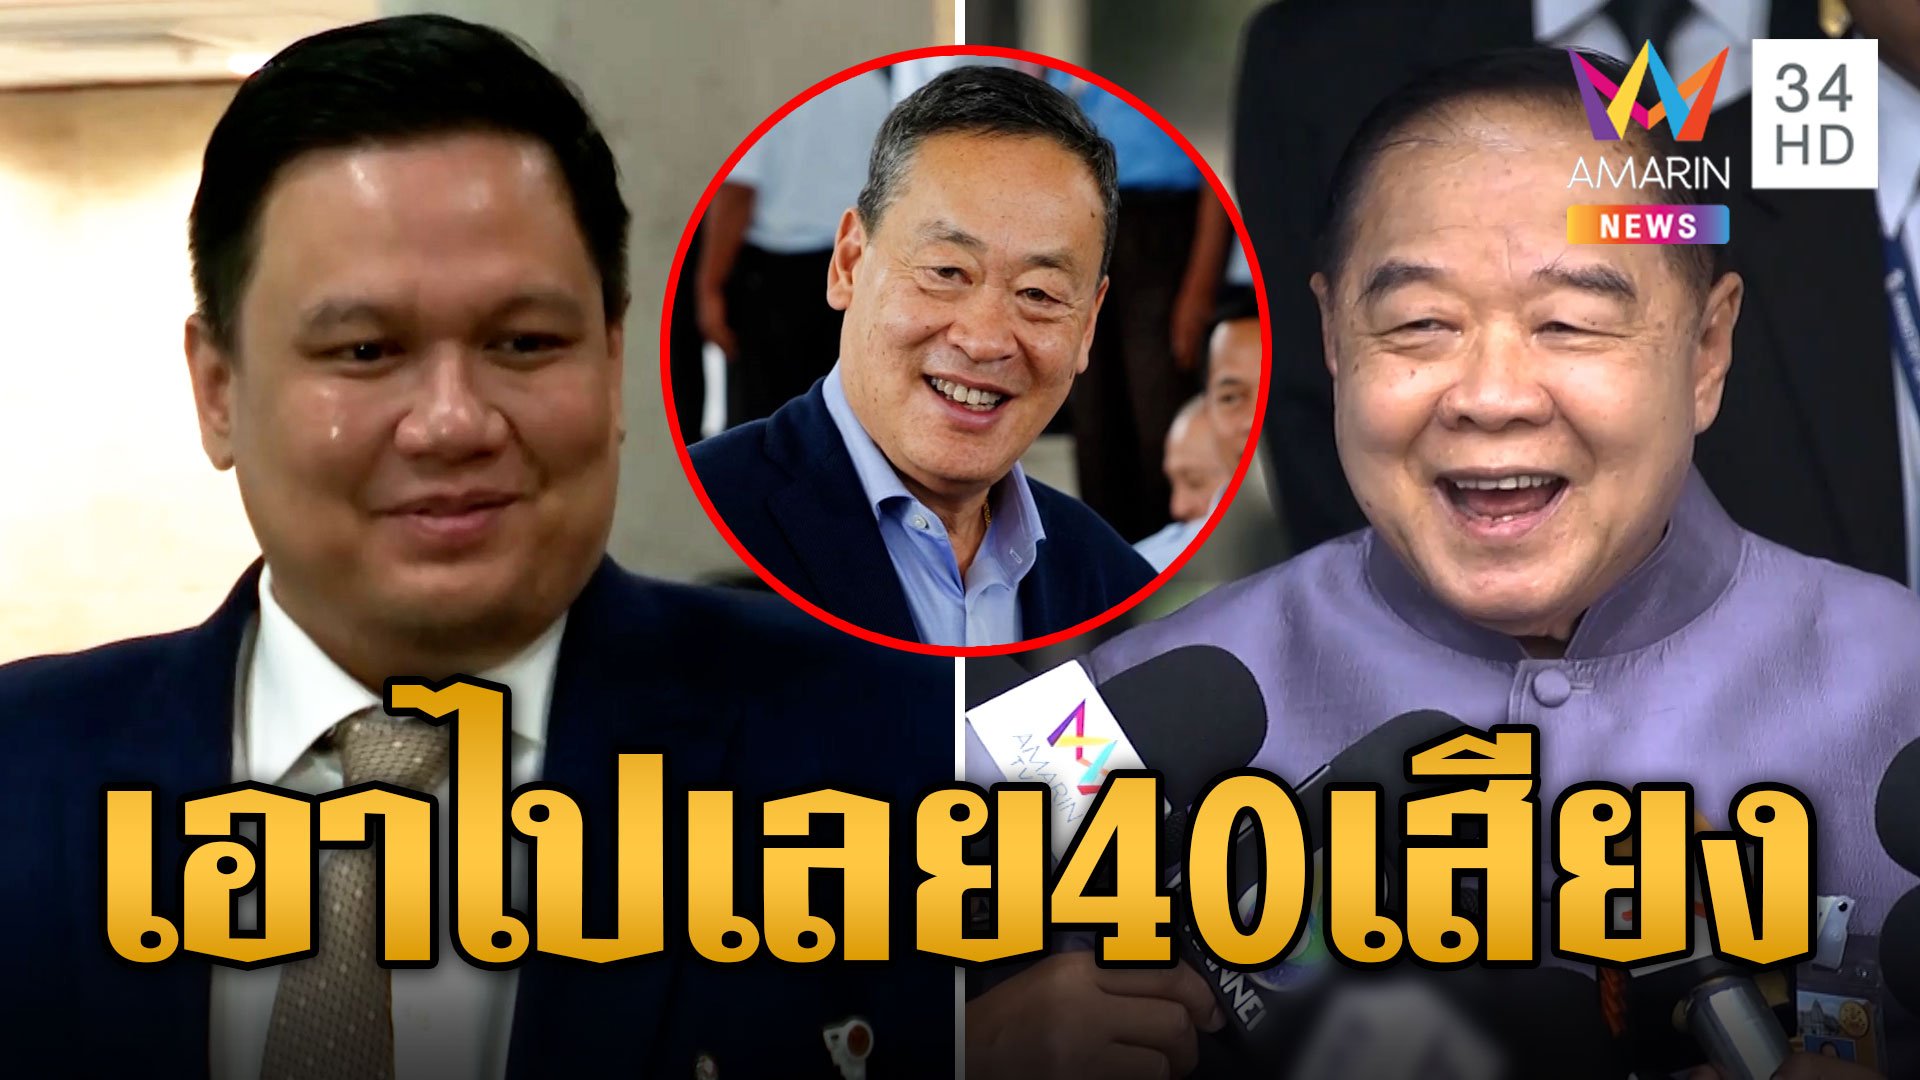 "ไผ่ ลิกค์" พลังประชารัฐ หนุนนายกฯ เพื่อไทย เอาไปเลย 40 เสียงไม่มีแตกแถว | ข่าวอรุณอมรินทร์ | 11 ส.ค. 66 | AMARIN TVHD34